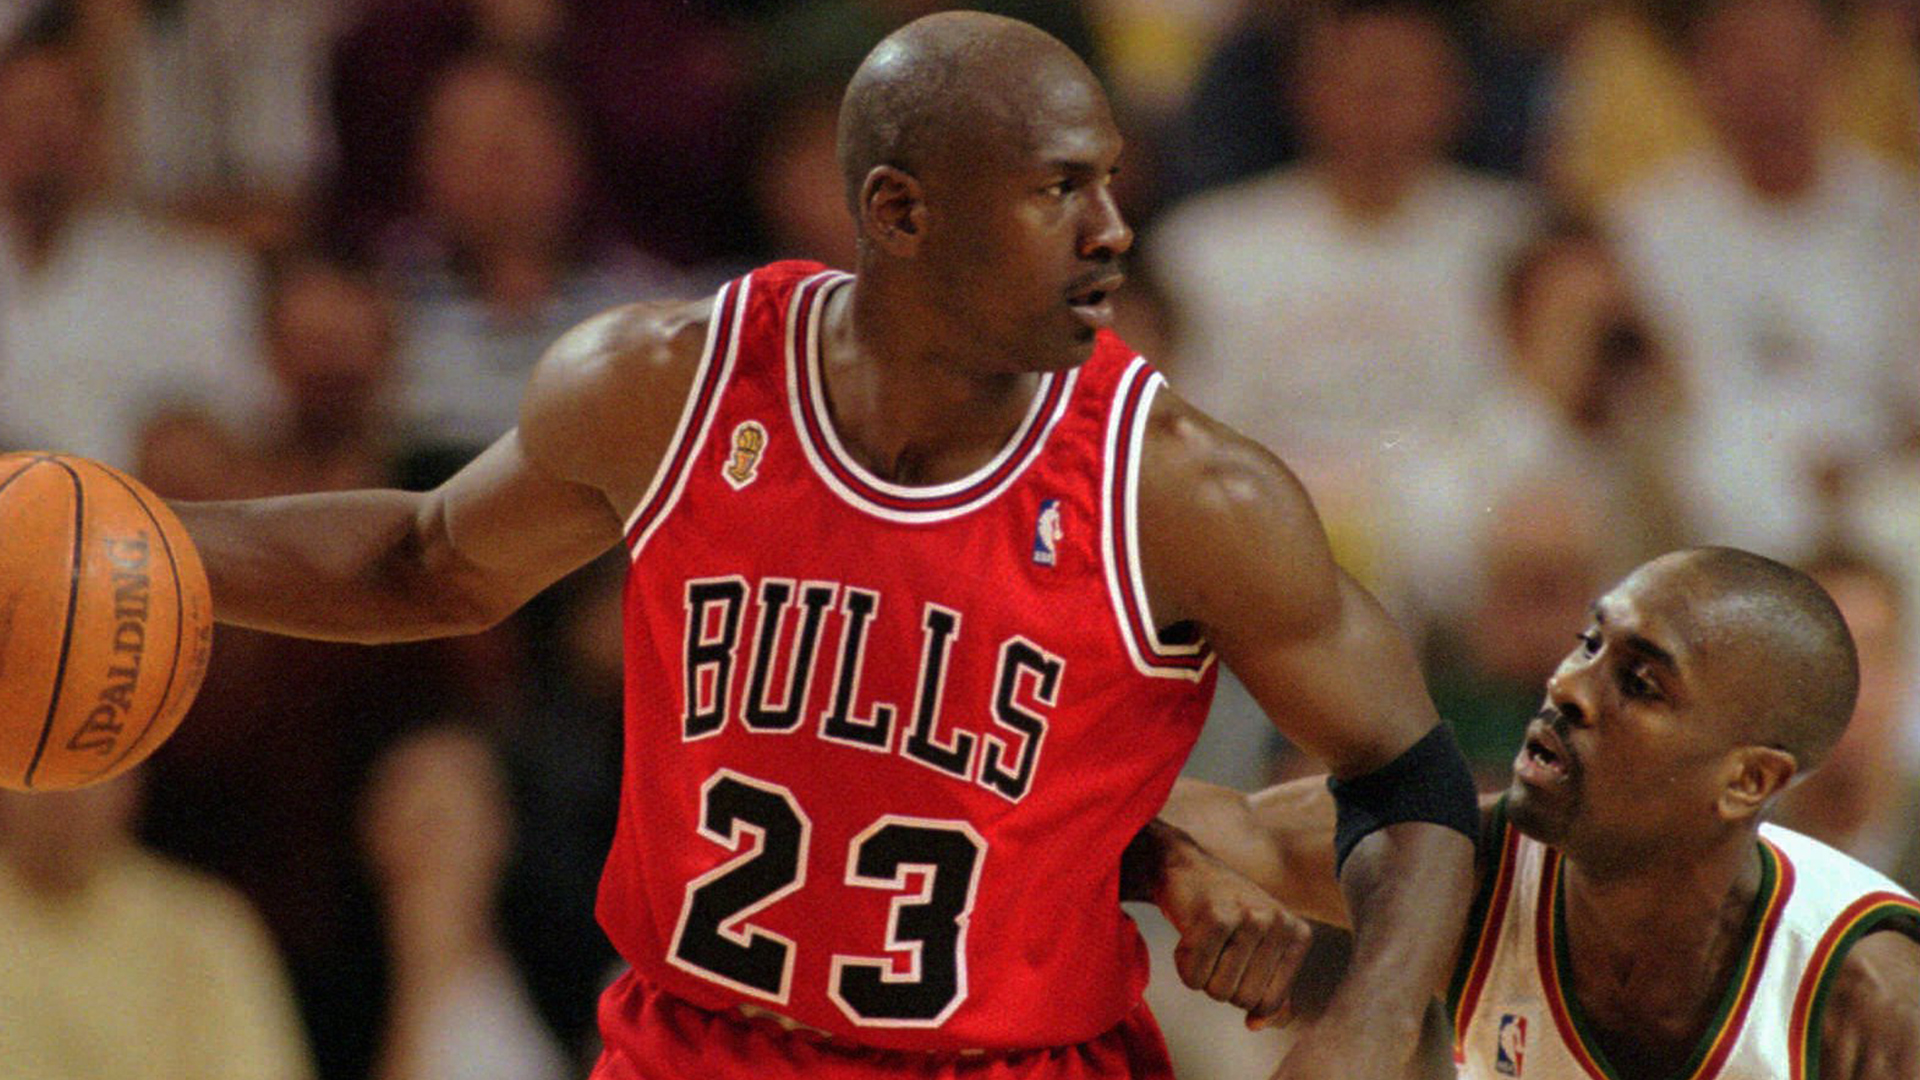 Bulls - Jordan 23 Retired Number Bull Silhouette (White)